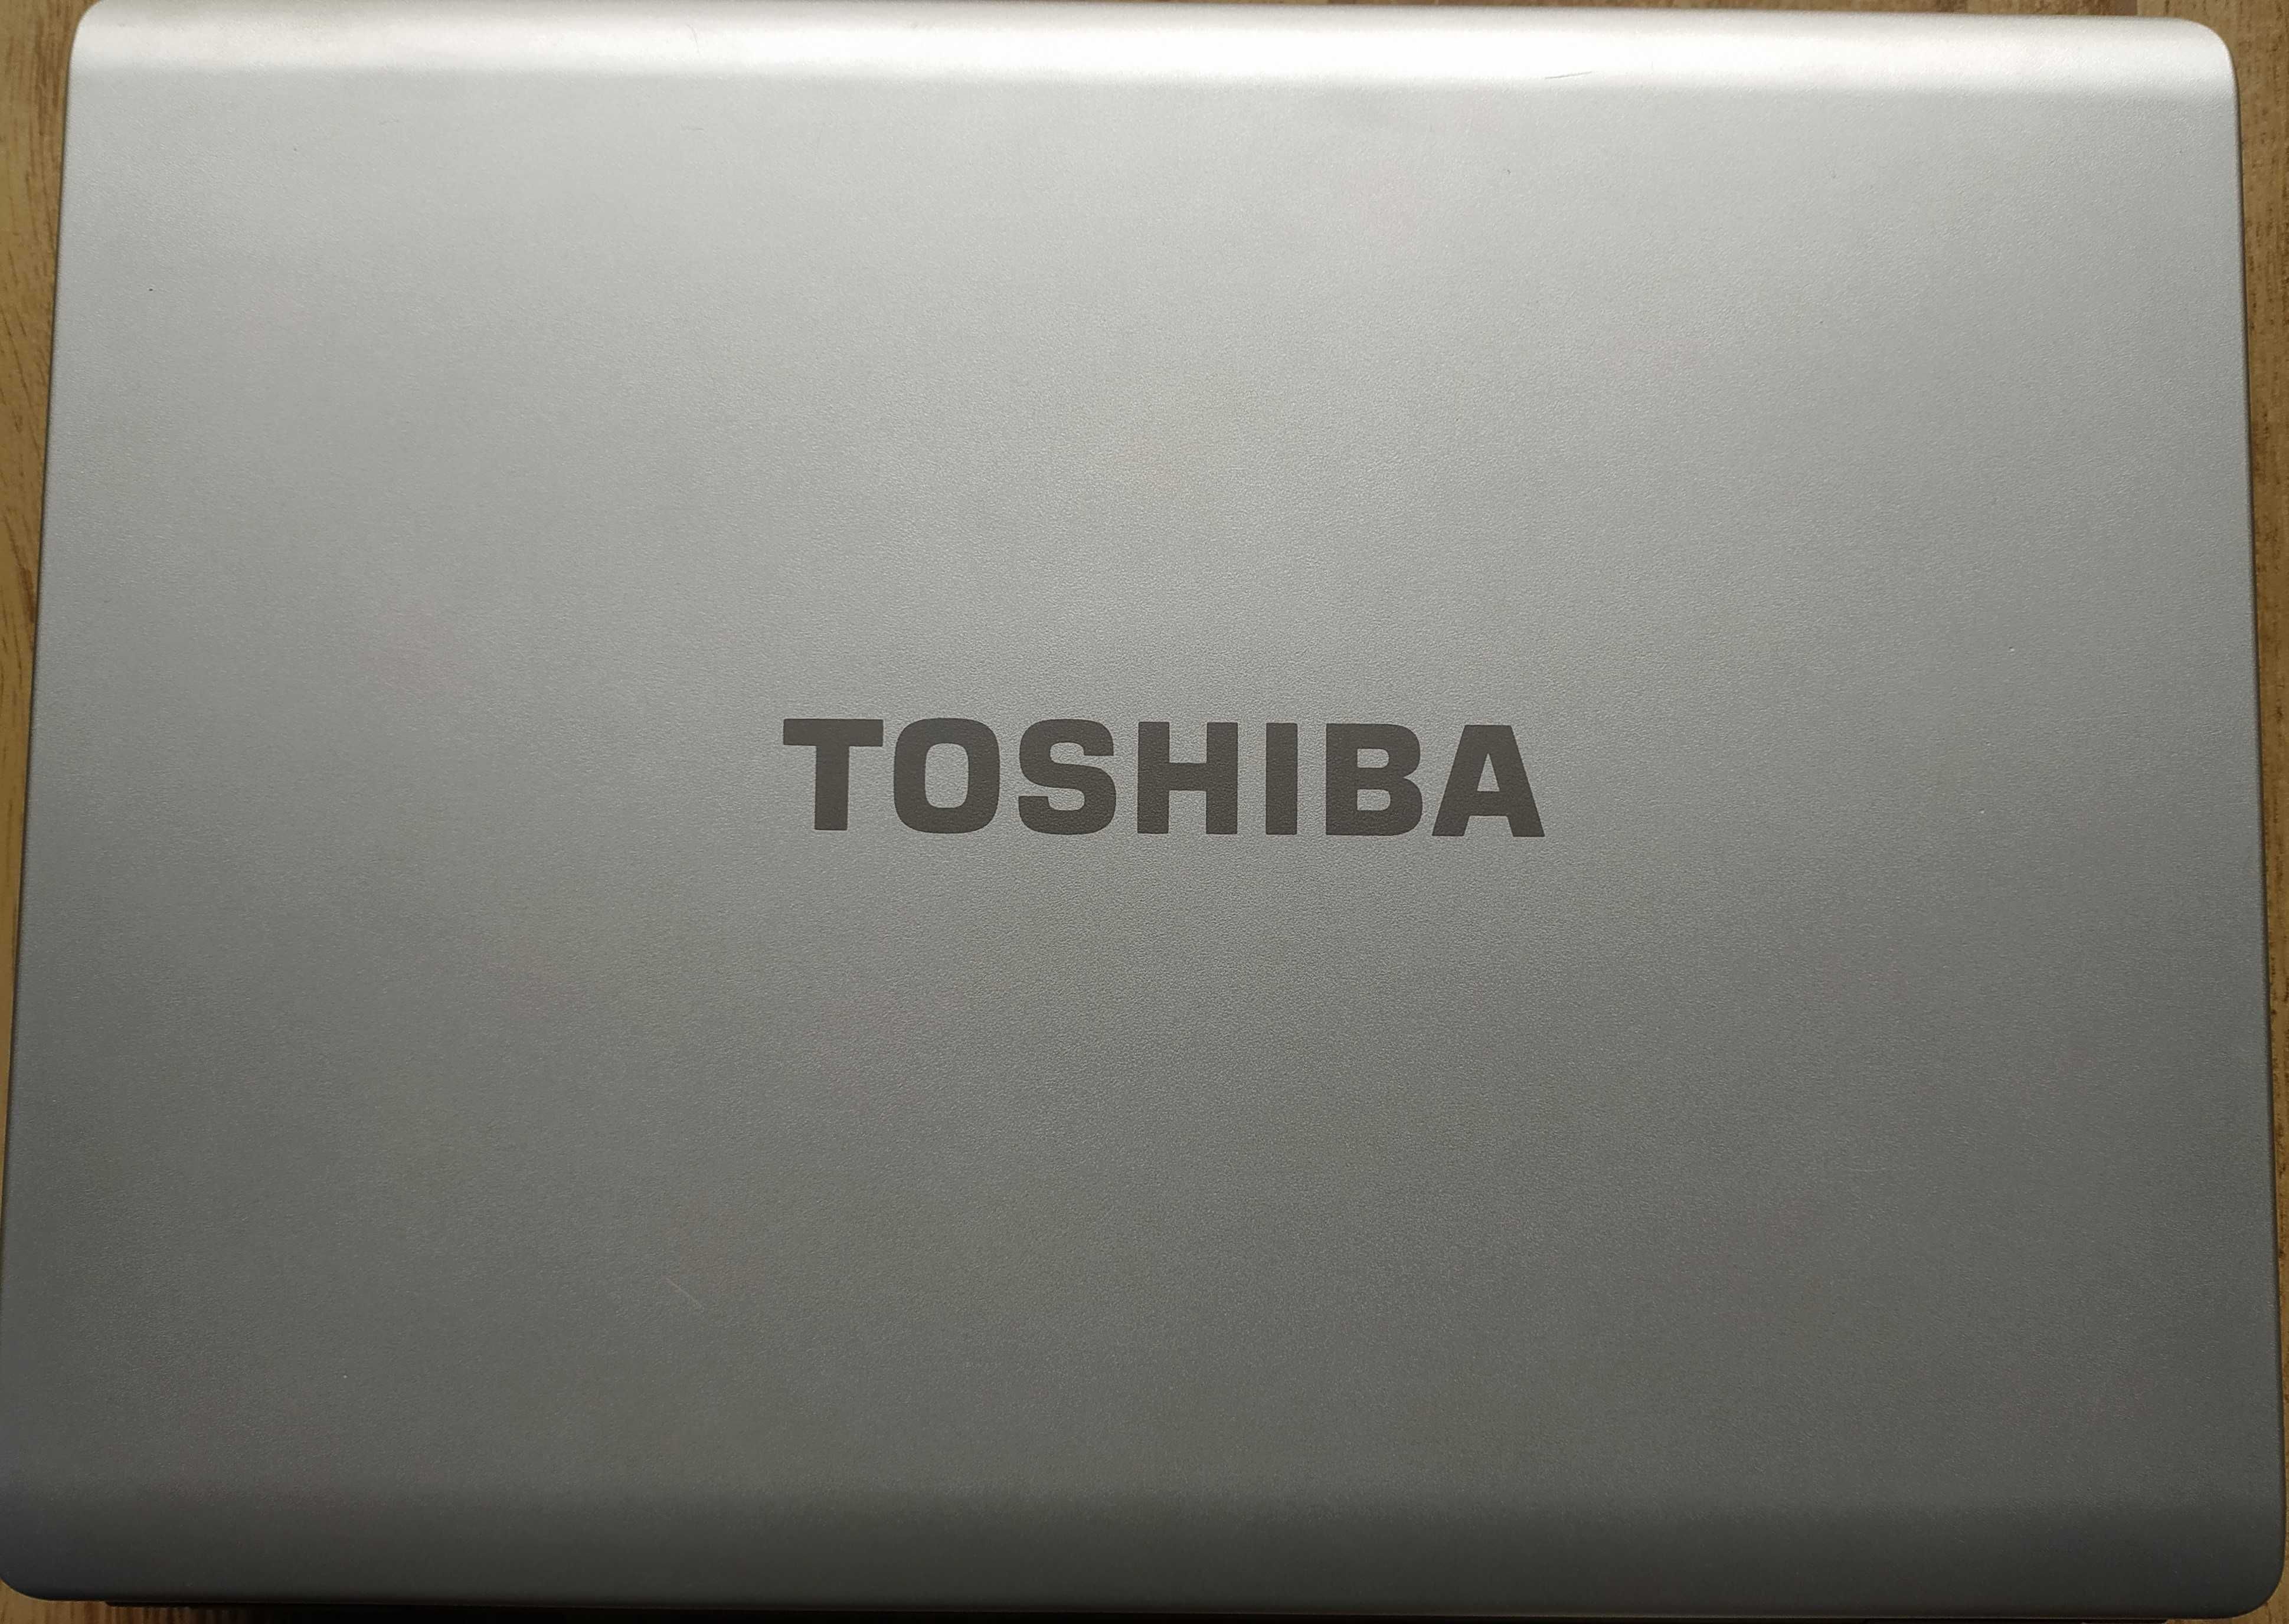 Laptop TOSHIBA Satellite L300-144. + nowy zasilacz